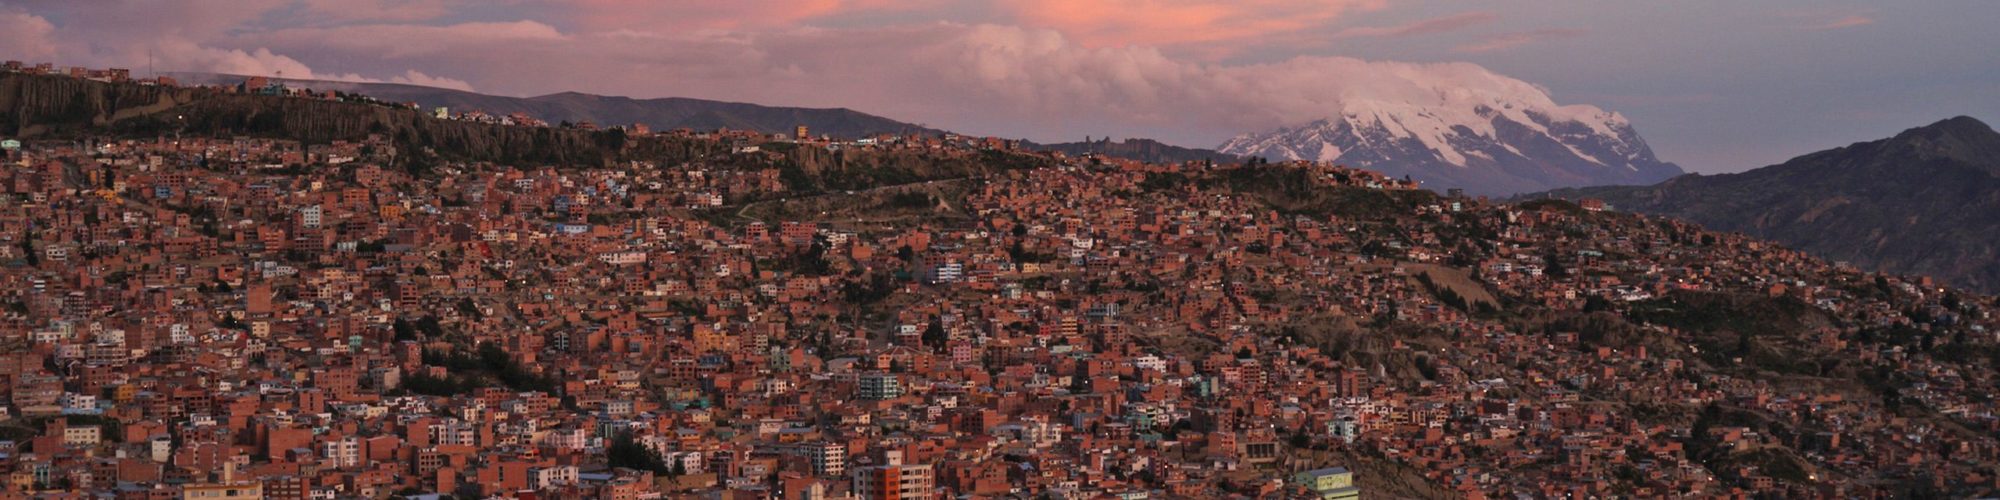 La Paz travel agents packages deals